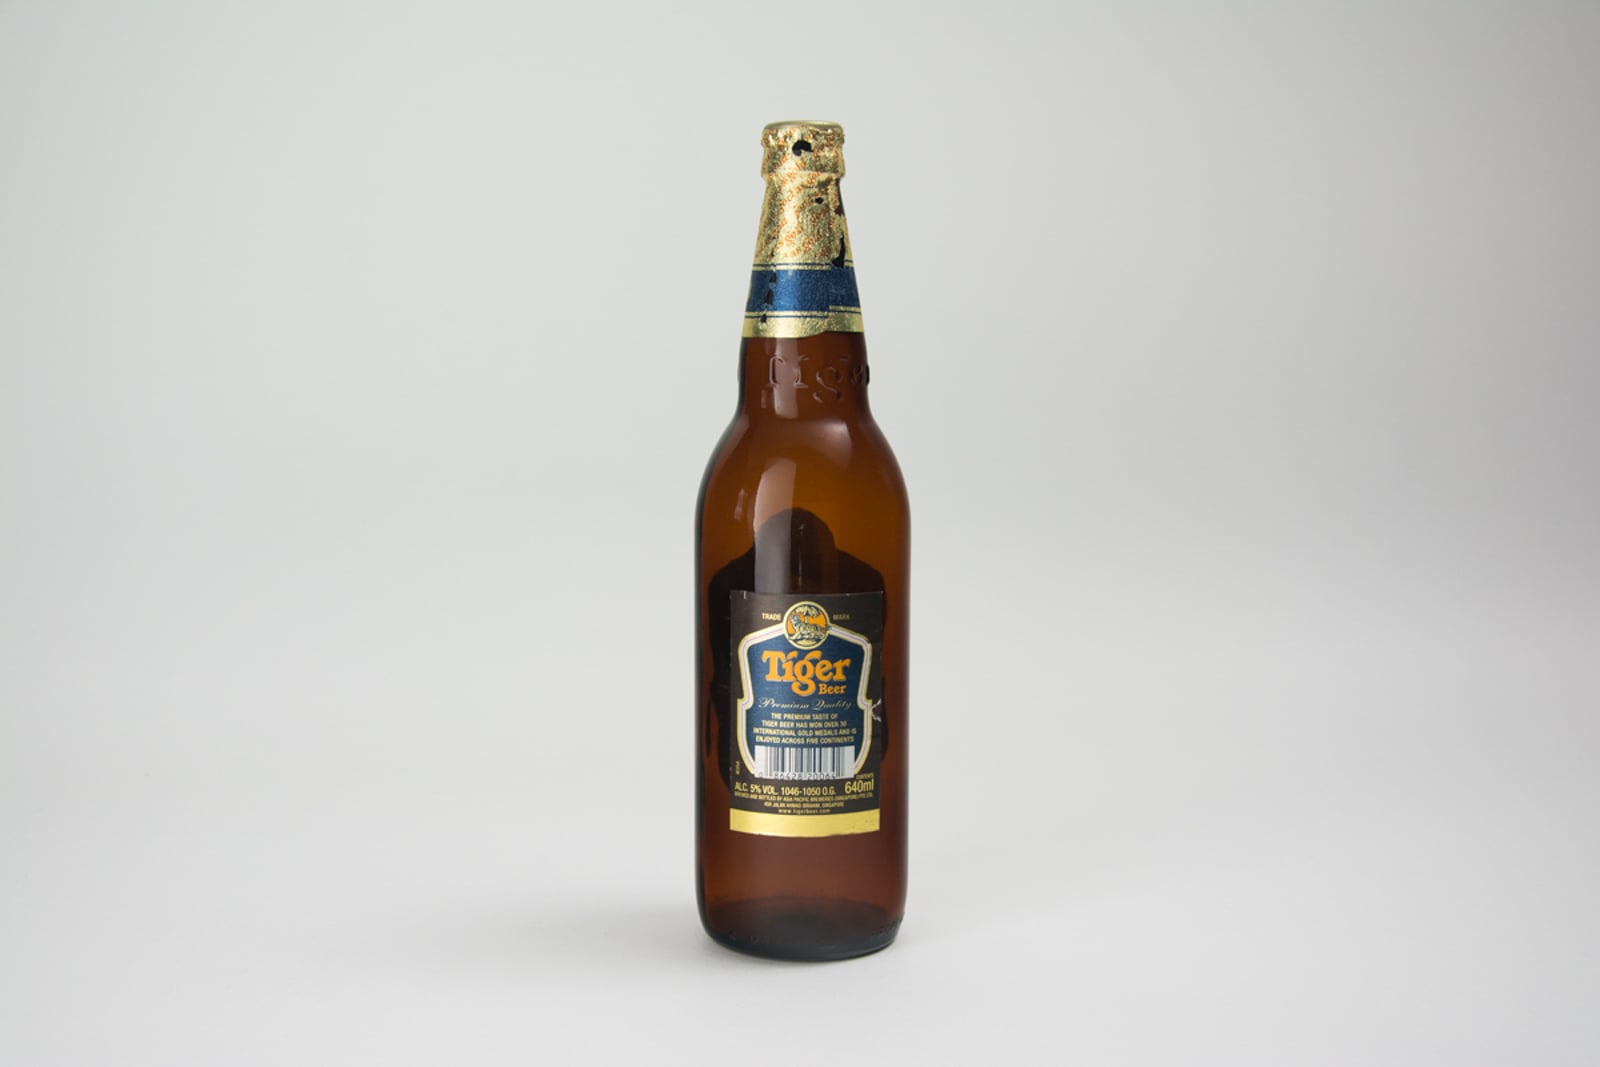 Tiger Gold Medal Lager Beer Bottle, 640 ml